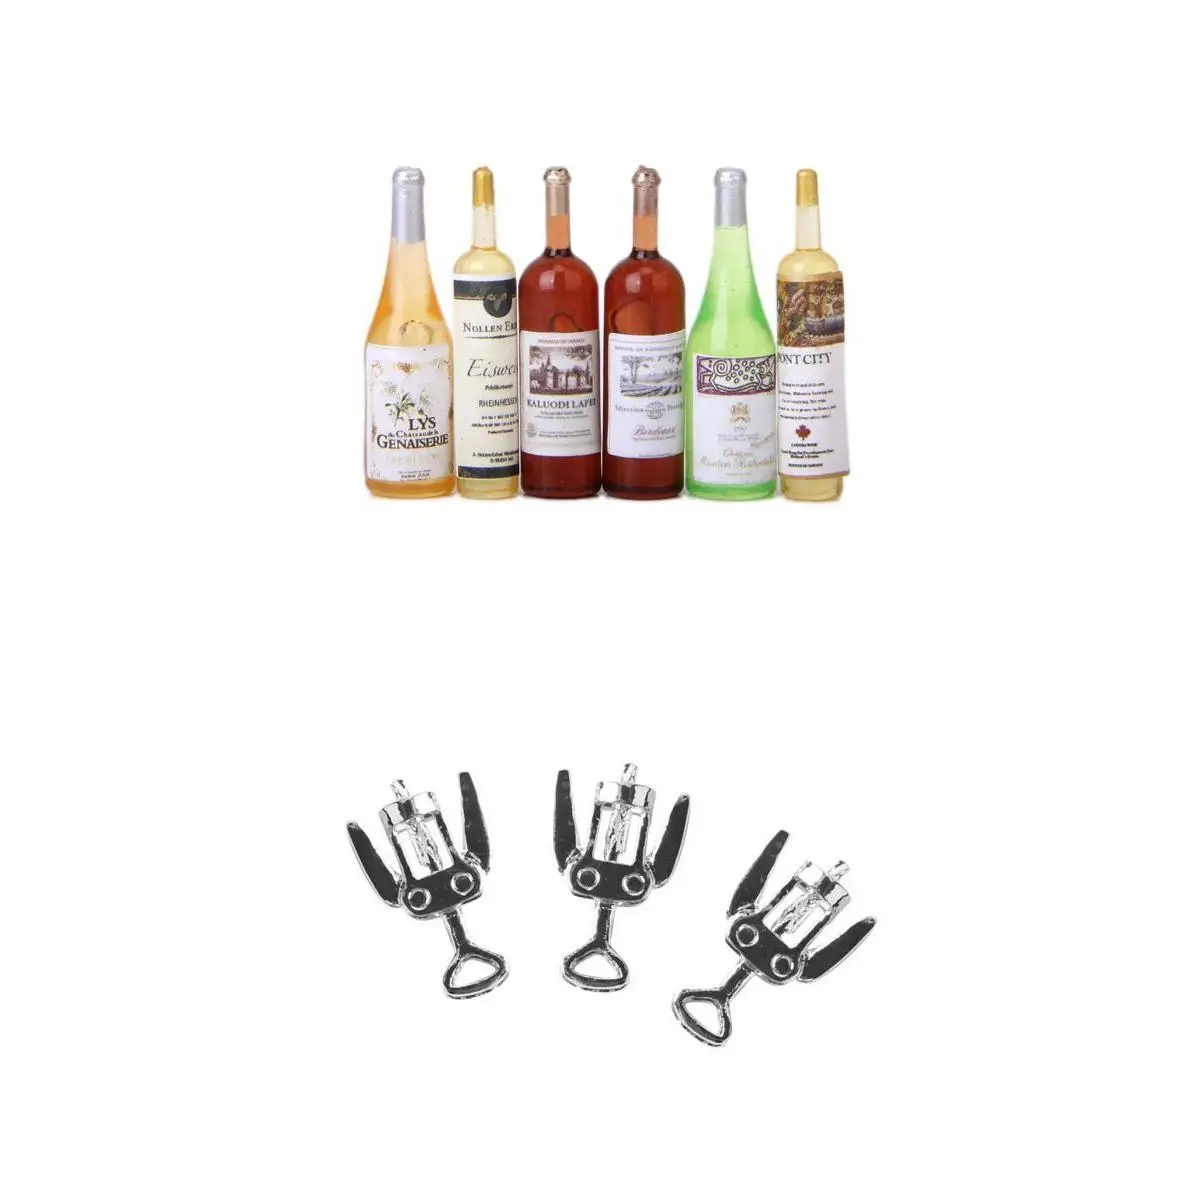 9 шт цветные миниатюрные бутылки для вина и пива 3 шт металлические штопор для бутылок Модель 1/12 кукольный домик пищевые принадлежности